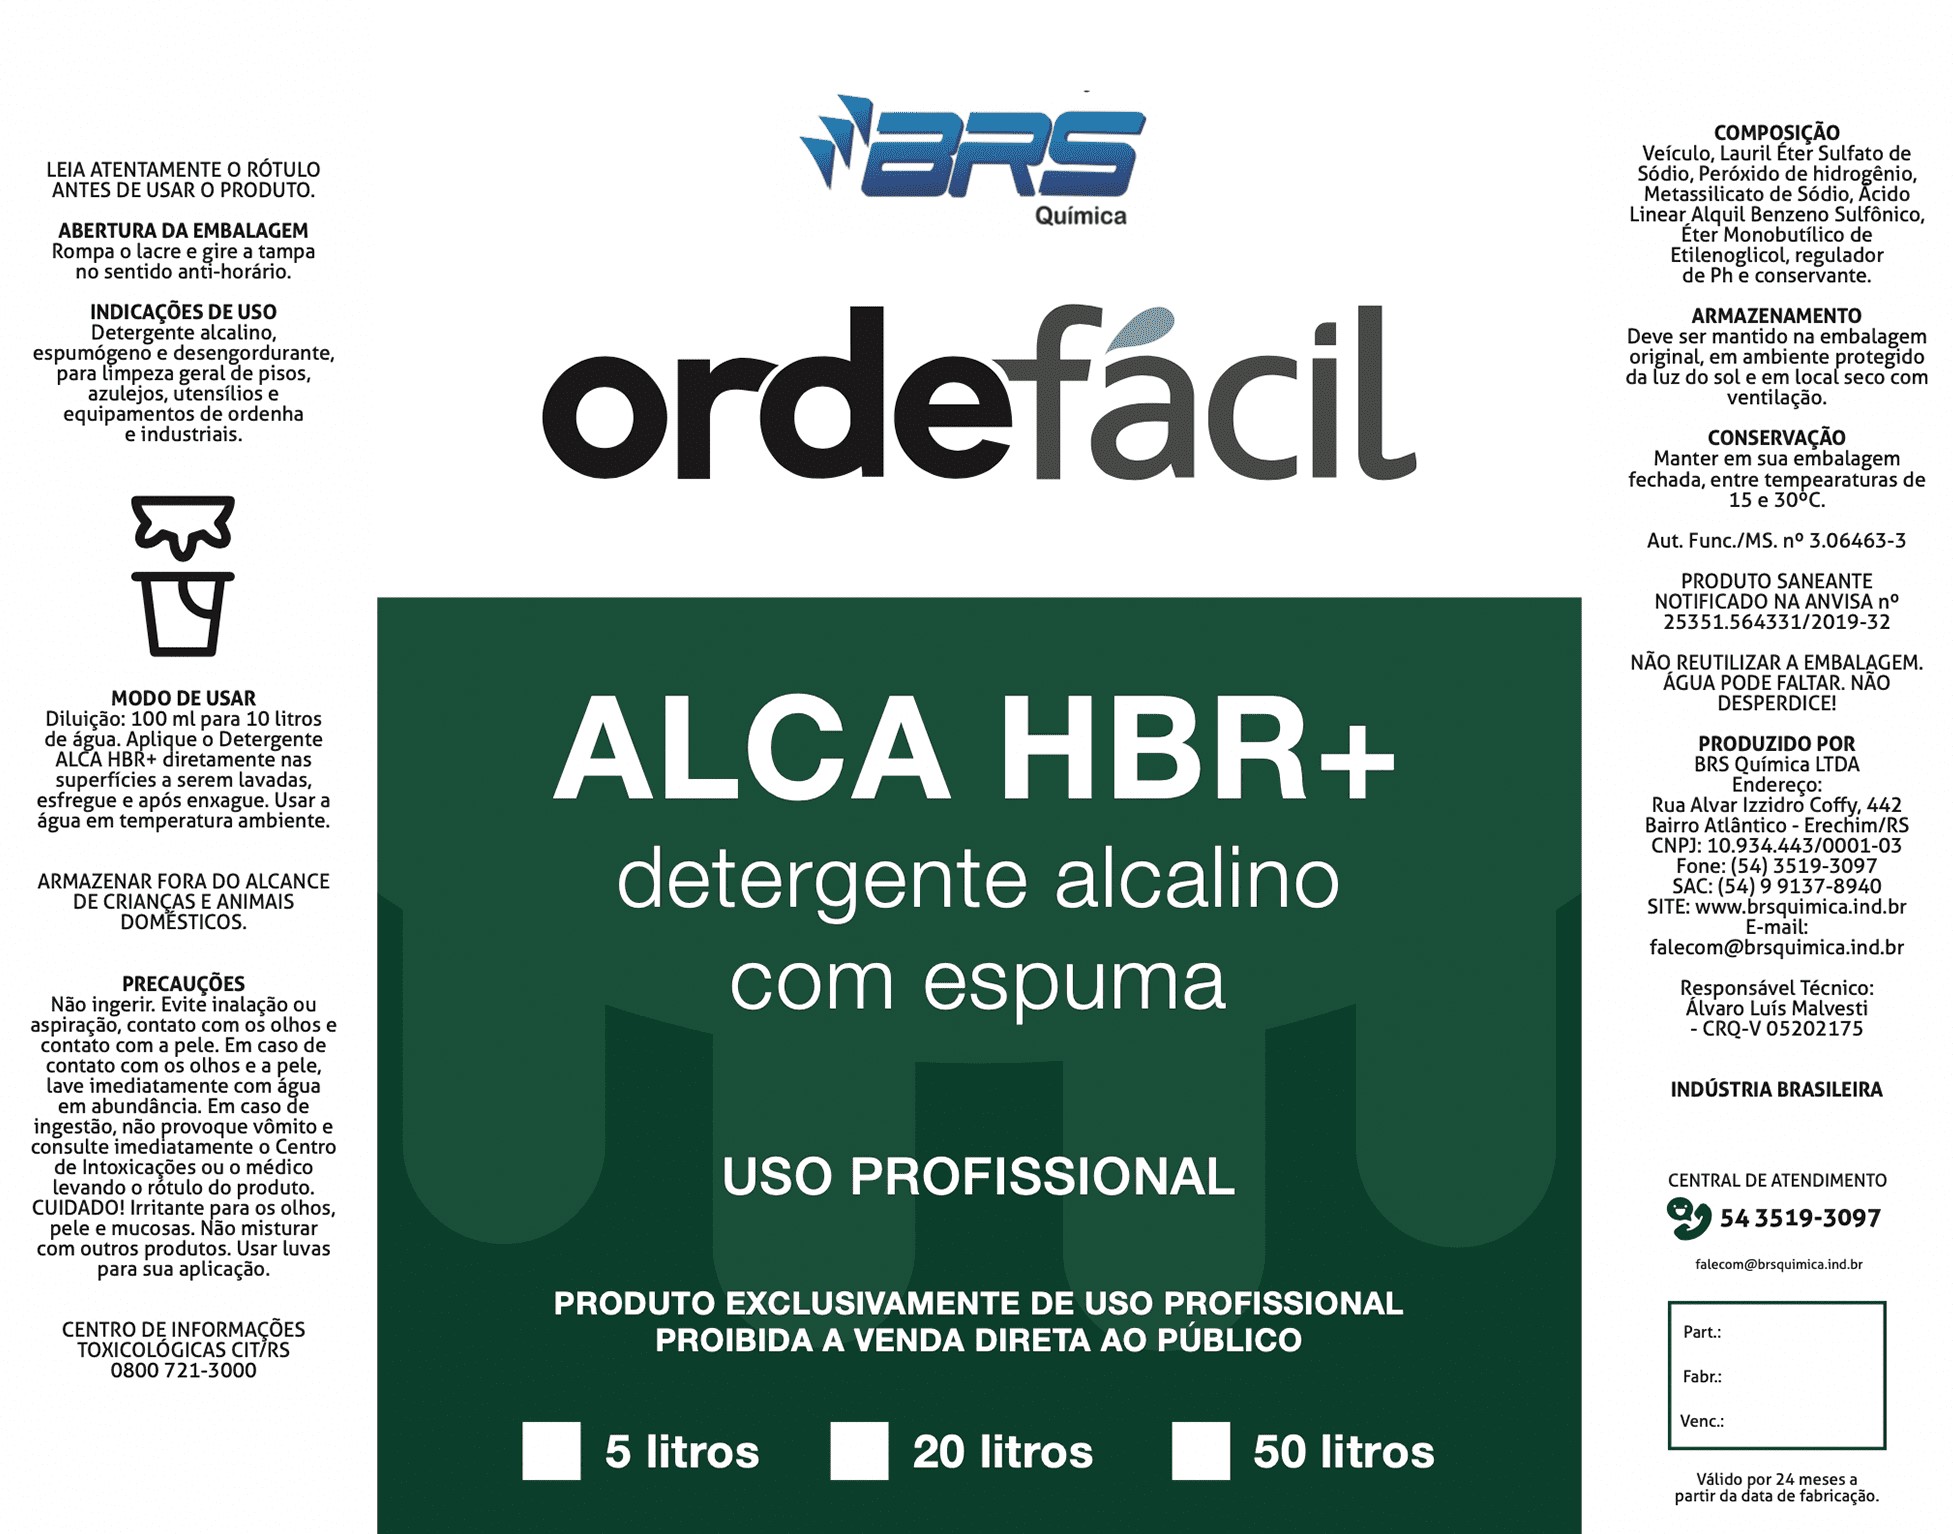 Alca Hbr + Detergente Alcalino Espumógeno